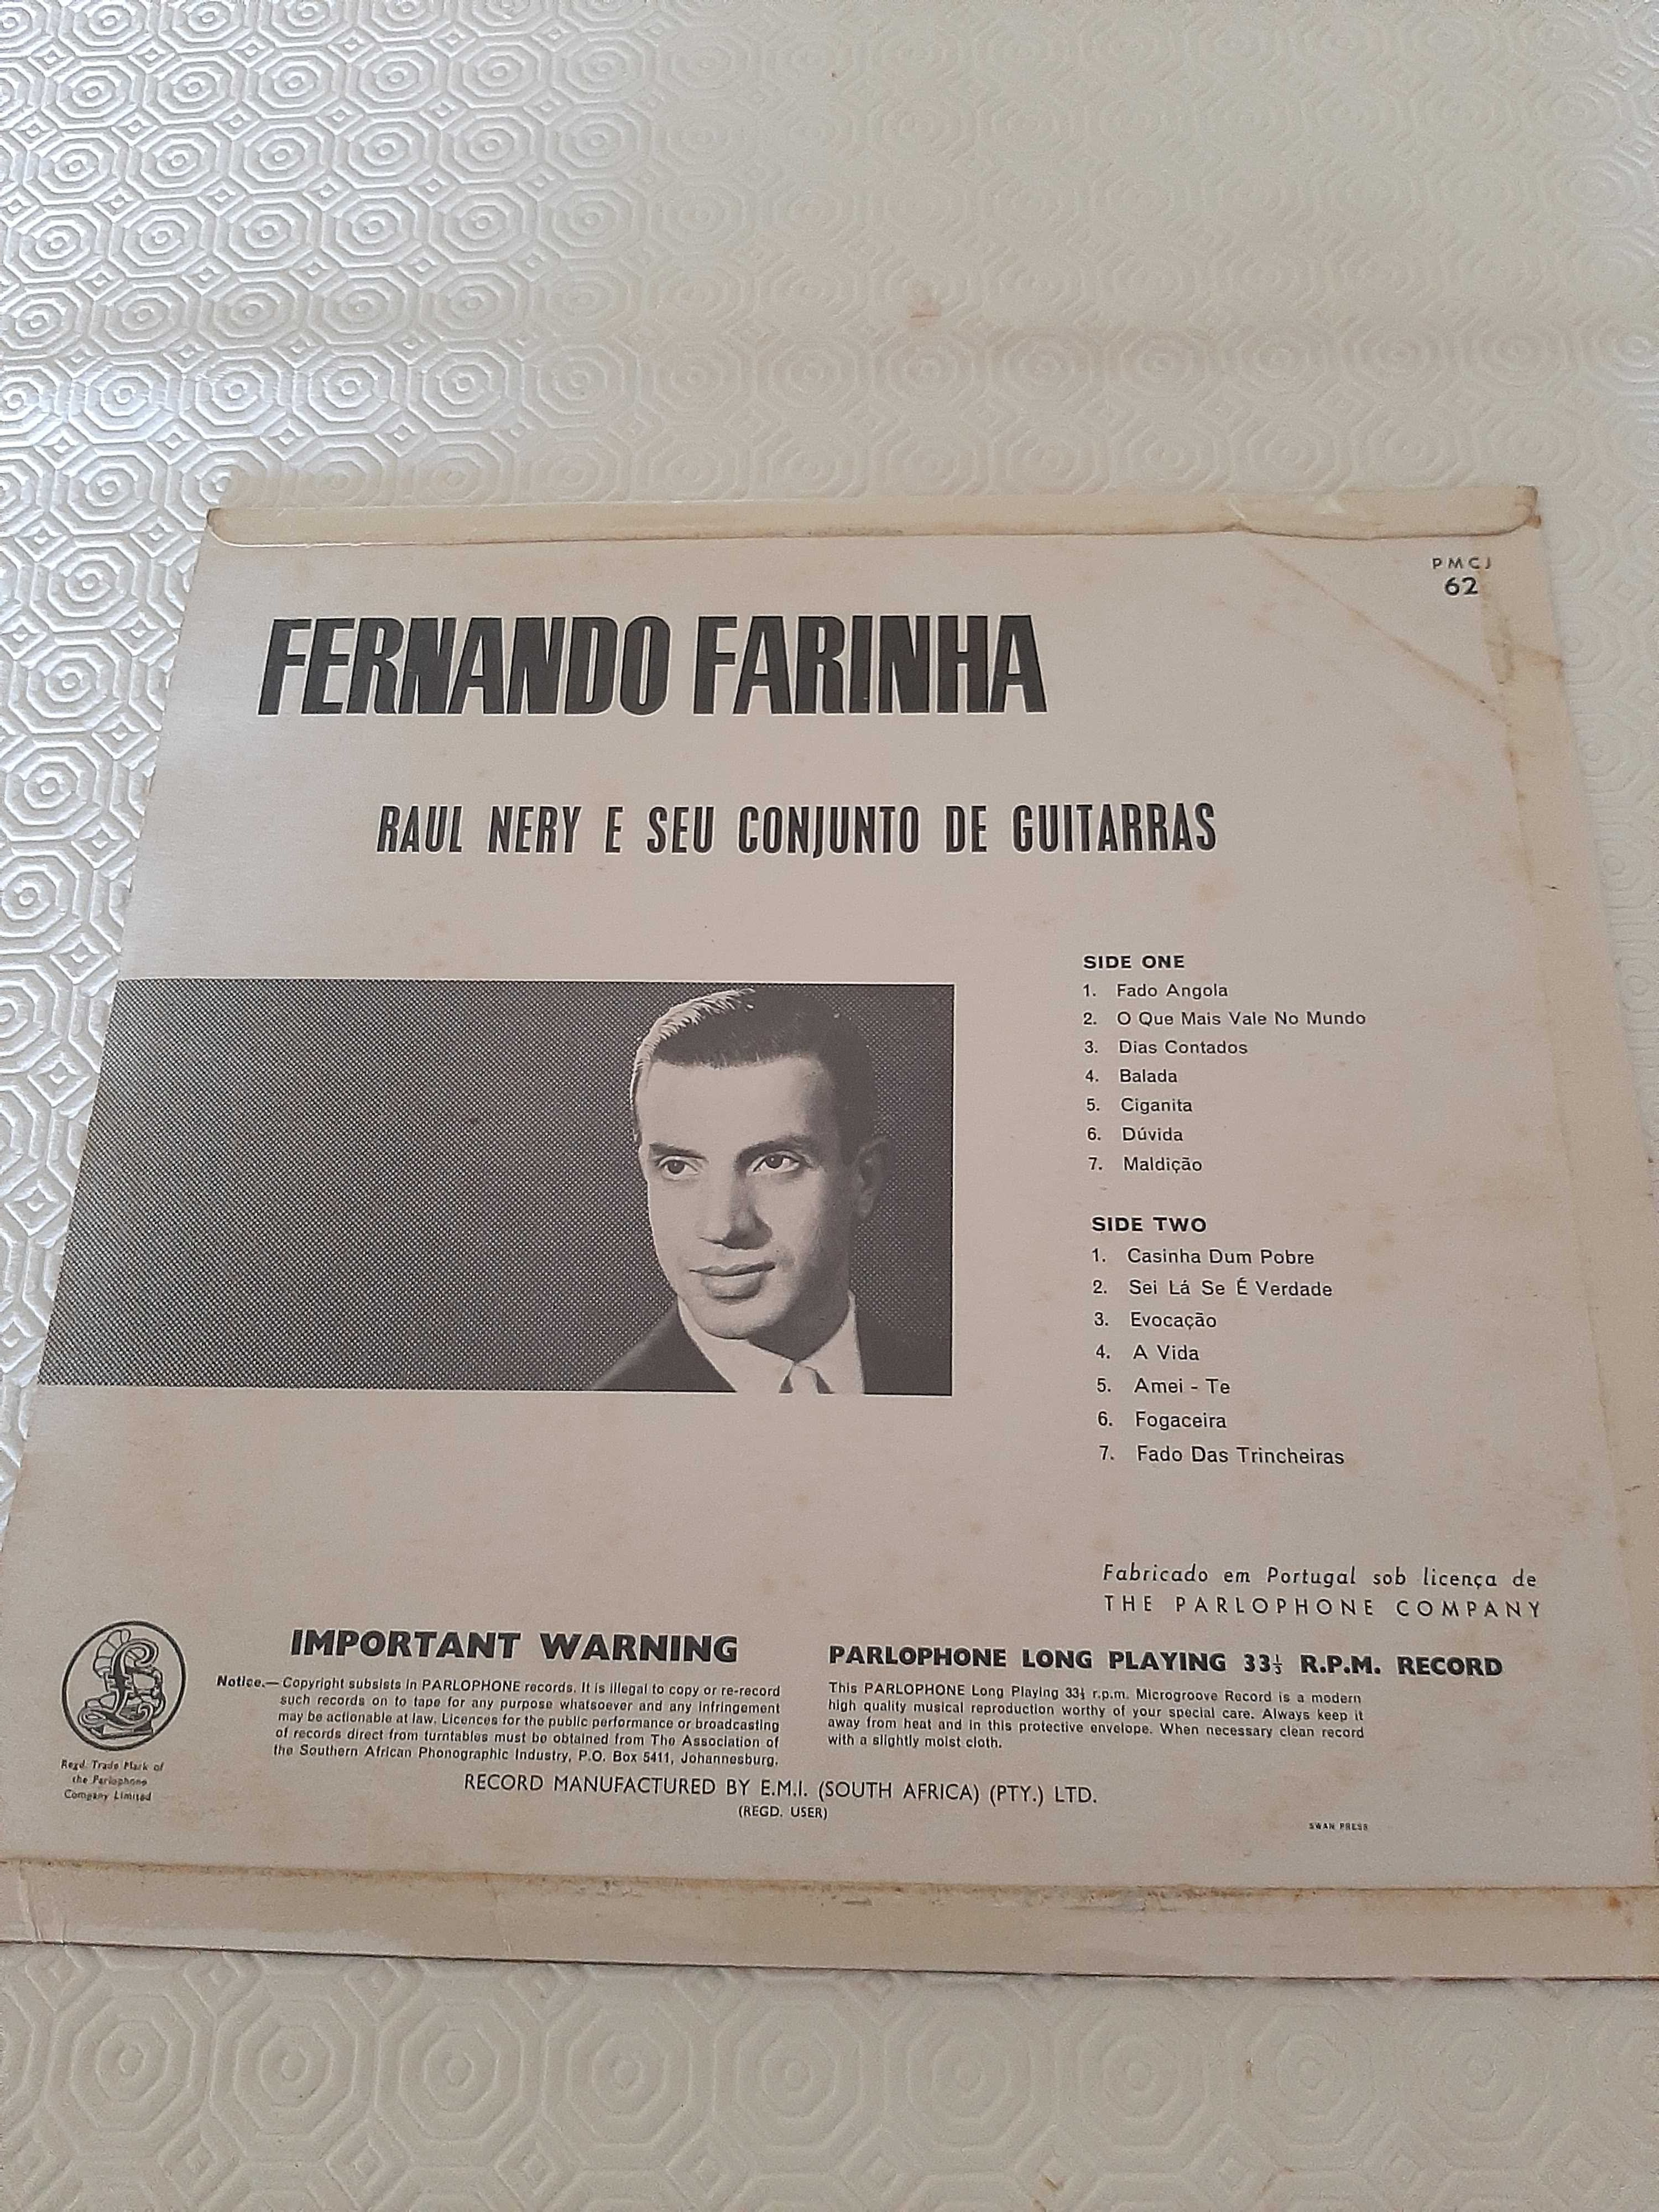 Discos Fernando Farinha e António Mourão